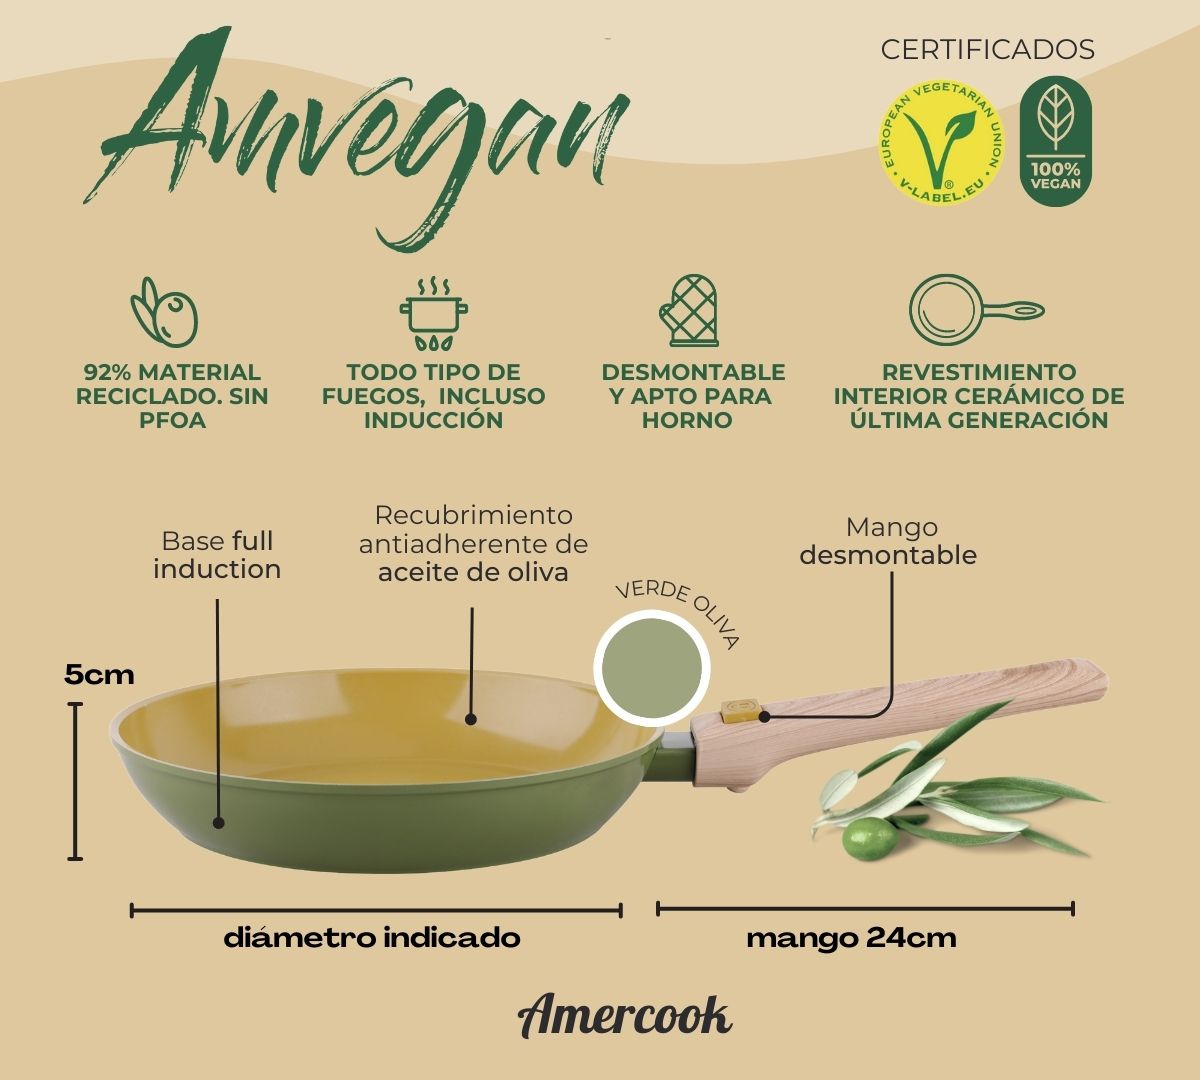 Cazo AmVegan con mango desmontable, apto para horno y todo tipo de coc –  Amercook Europe